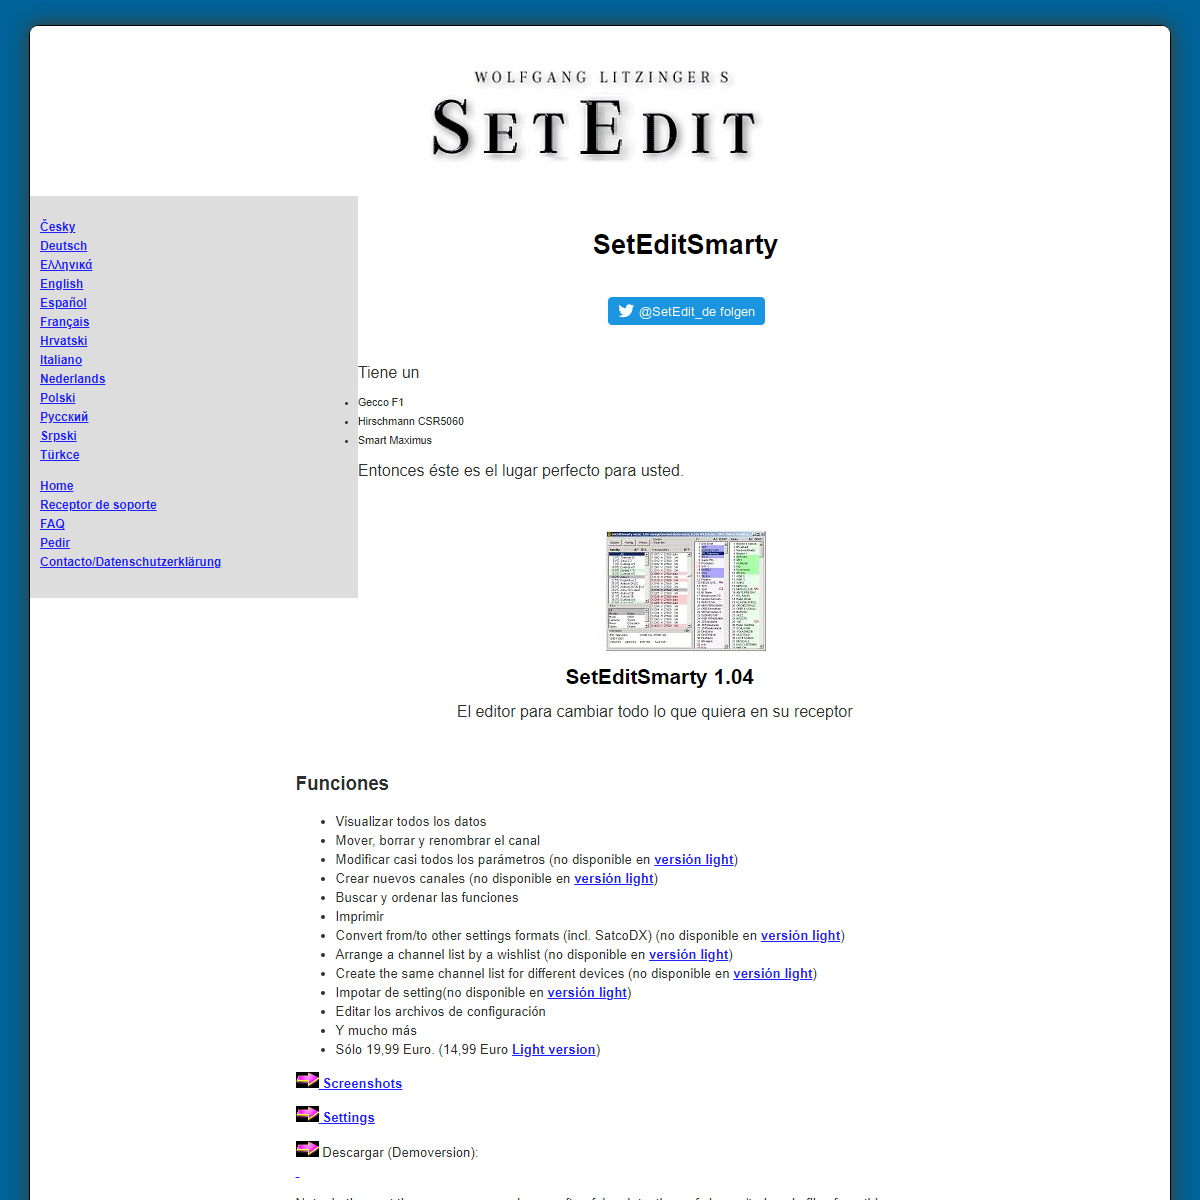 A complete backup of https://setedit.de/SetEdit.php?spr=7&Editor=29&device=Smart